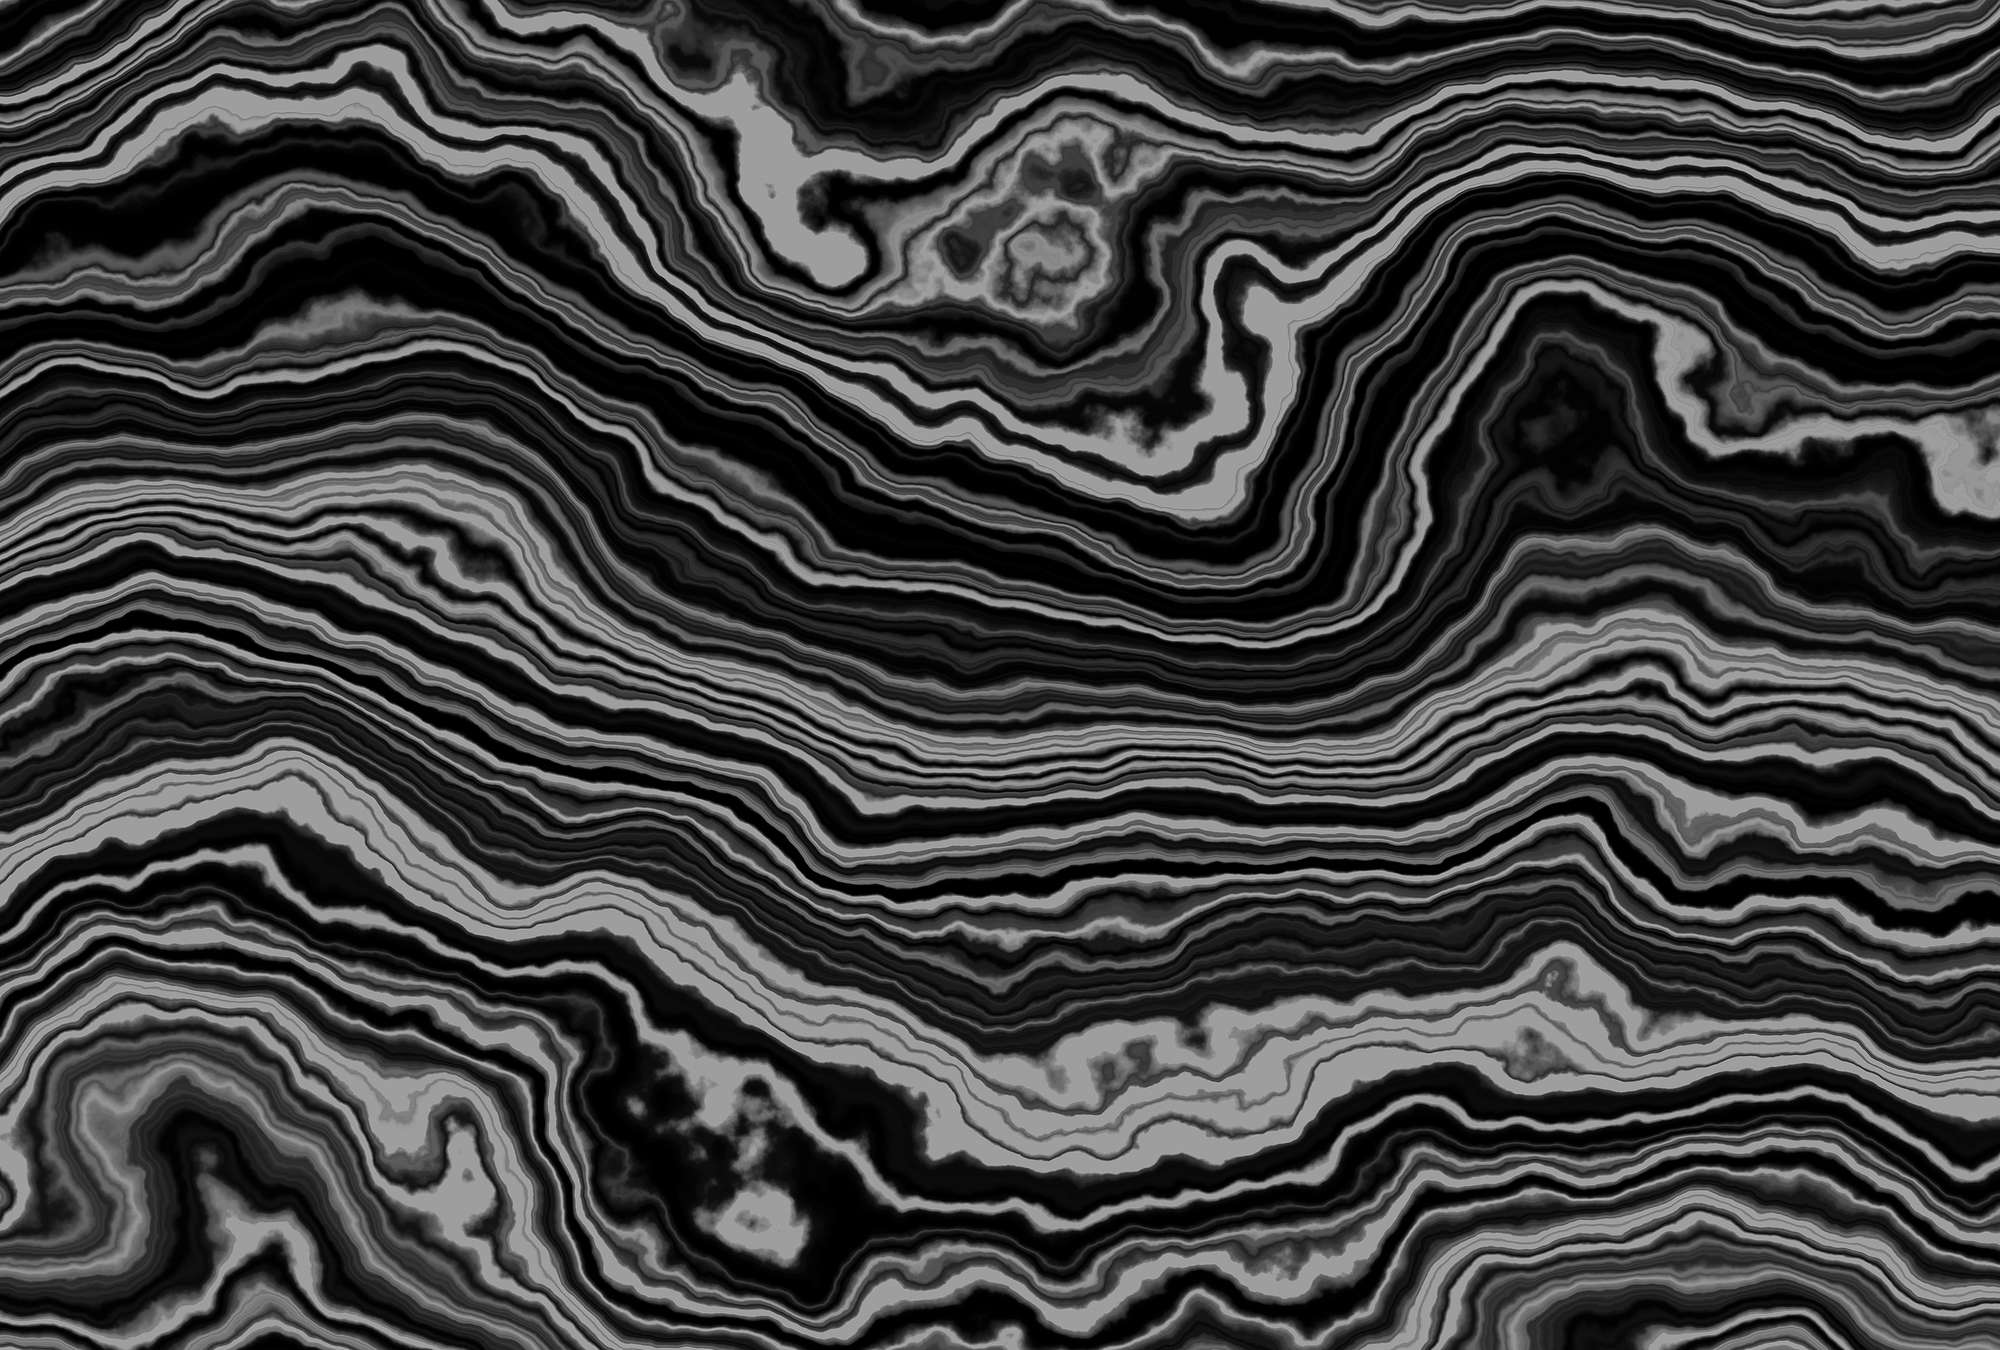             Onyx 1 - Querschnitt eines Onyx Marmor als Fototapete – Schwarz, Weiss | Perlmutt Glattvlies
        